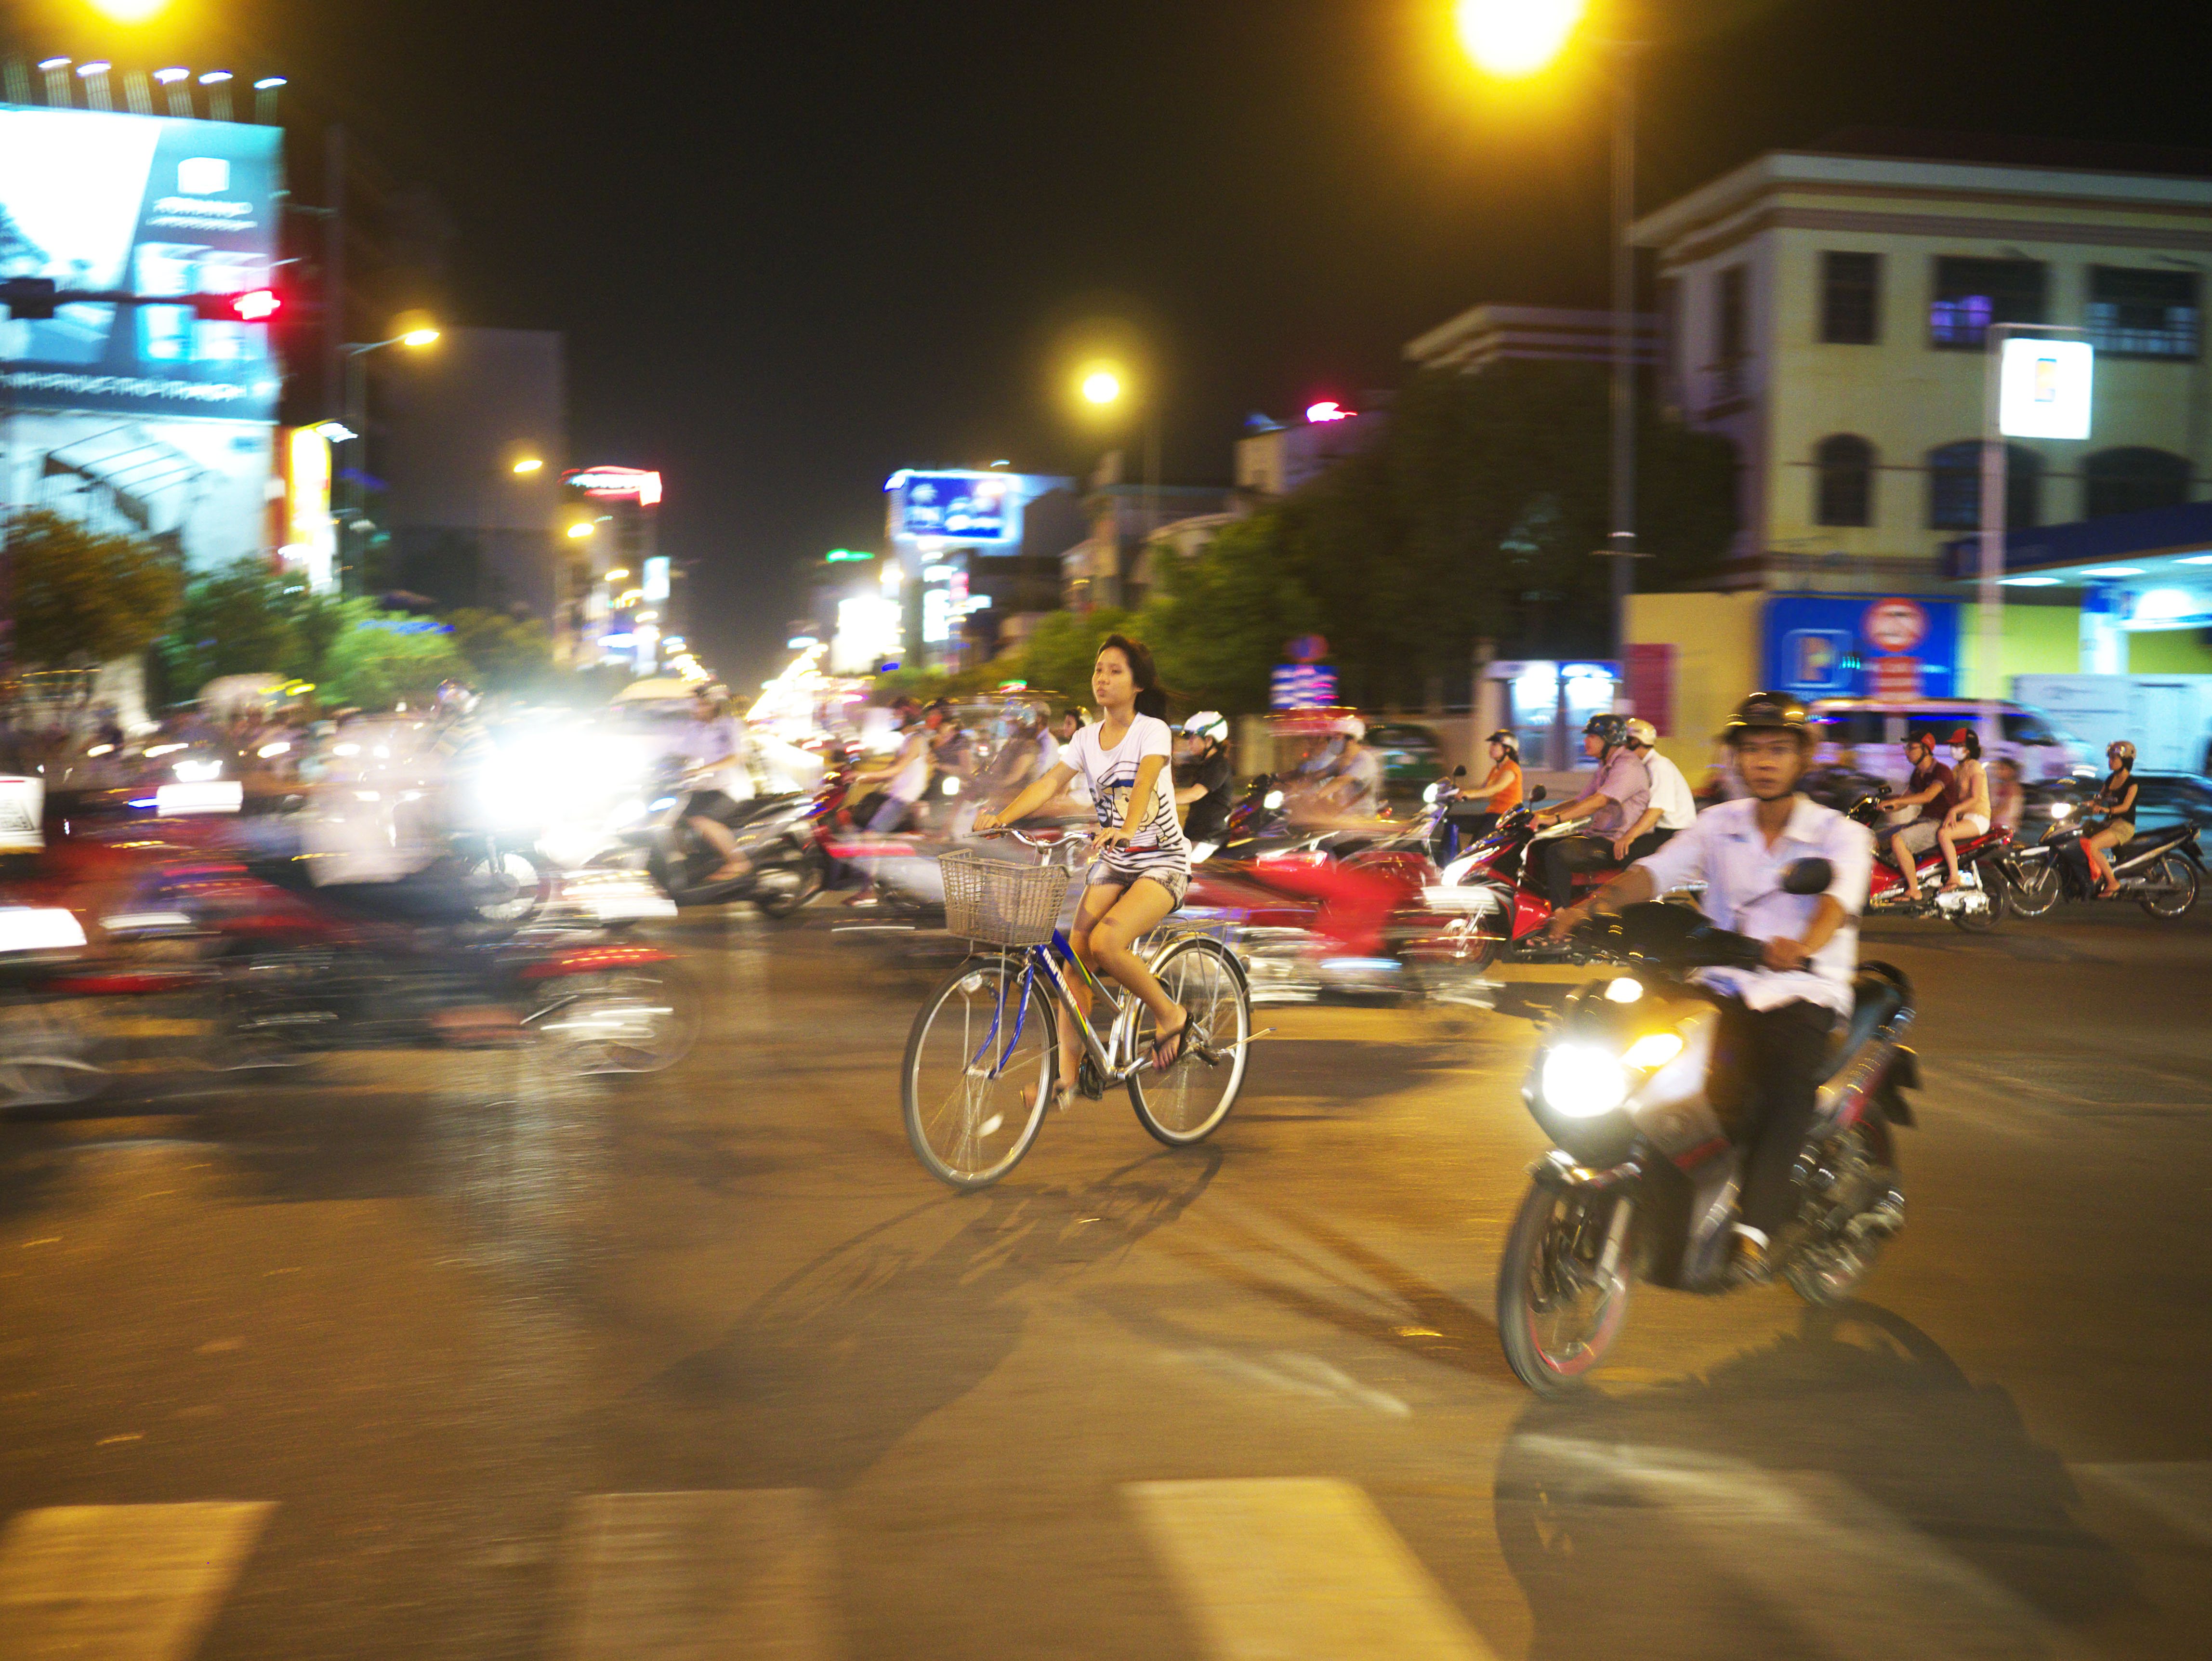 fotografia, material, livra, ajardine, imagine, proveja fotografia,Ho Chi Minh City noite, , , , 